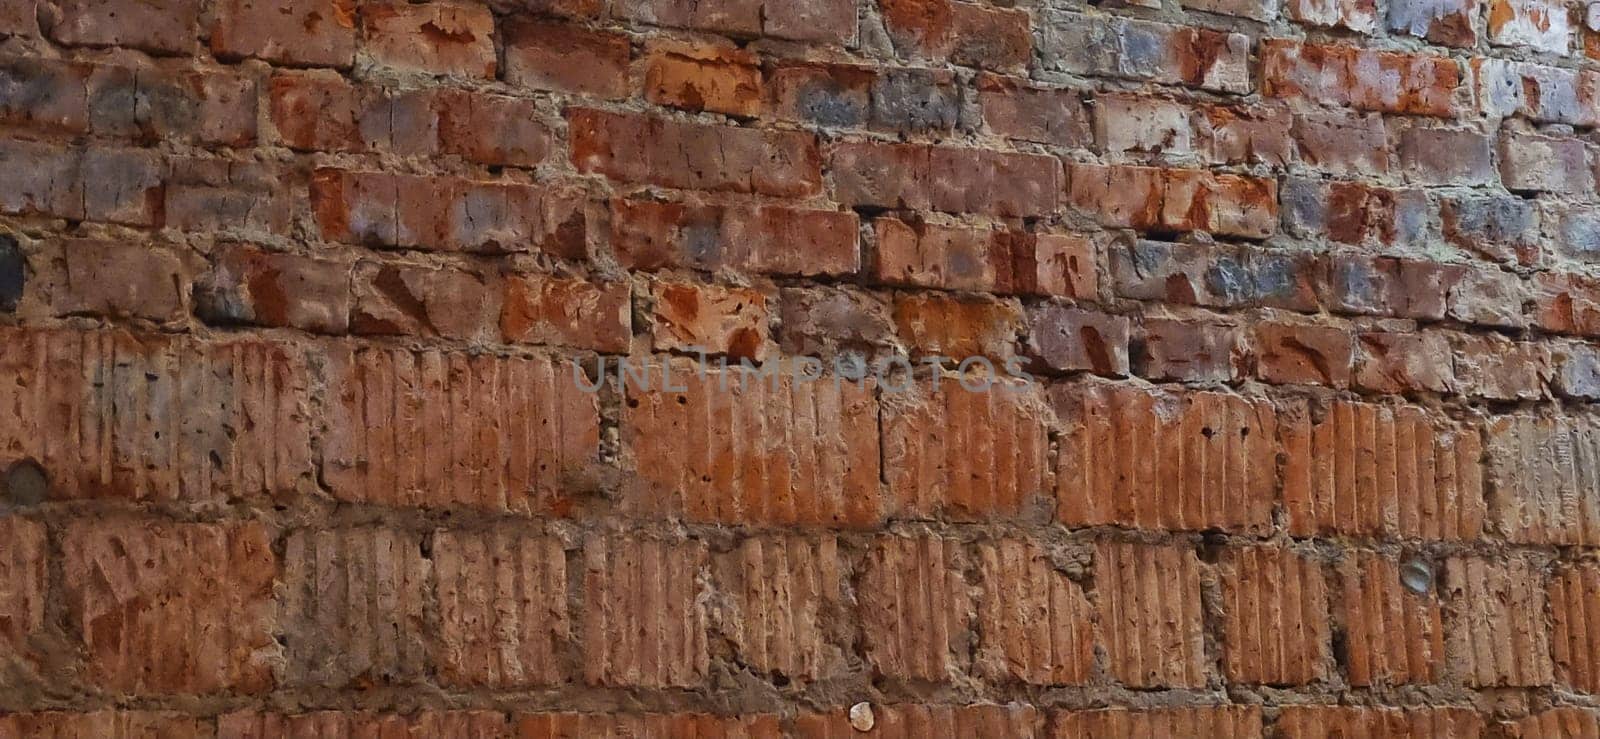 Close up shot of the wall made of old bricks